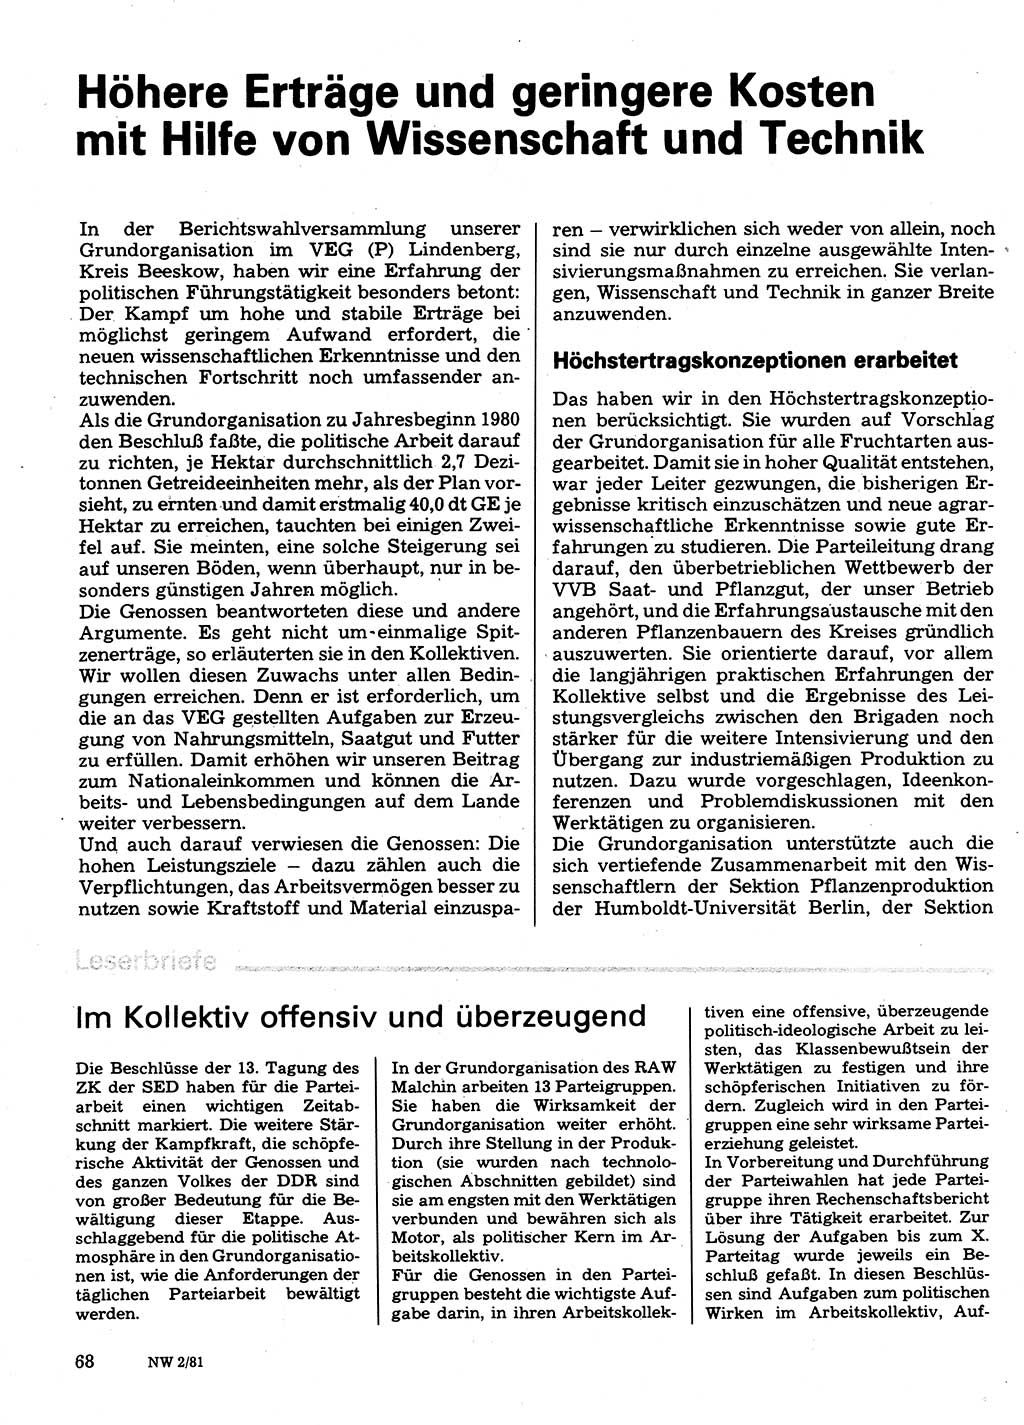 Neuer Weg (NW), Organ des Zentralkomitees (ZK) der SED (Sozialistische Einheitspartei Deutschlands) für Fragen des Parteilebens, 36. Jahrgang [Deutsche Demokratische Republik (DDR)] 1981, Seite 68 (NW ZK SED DDR 1981, S. 68)